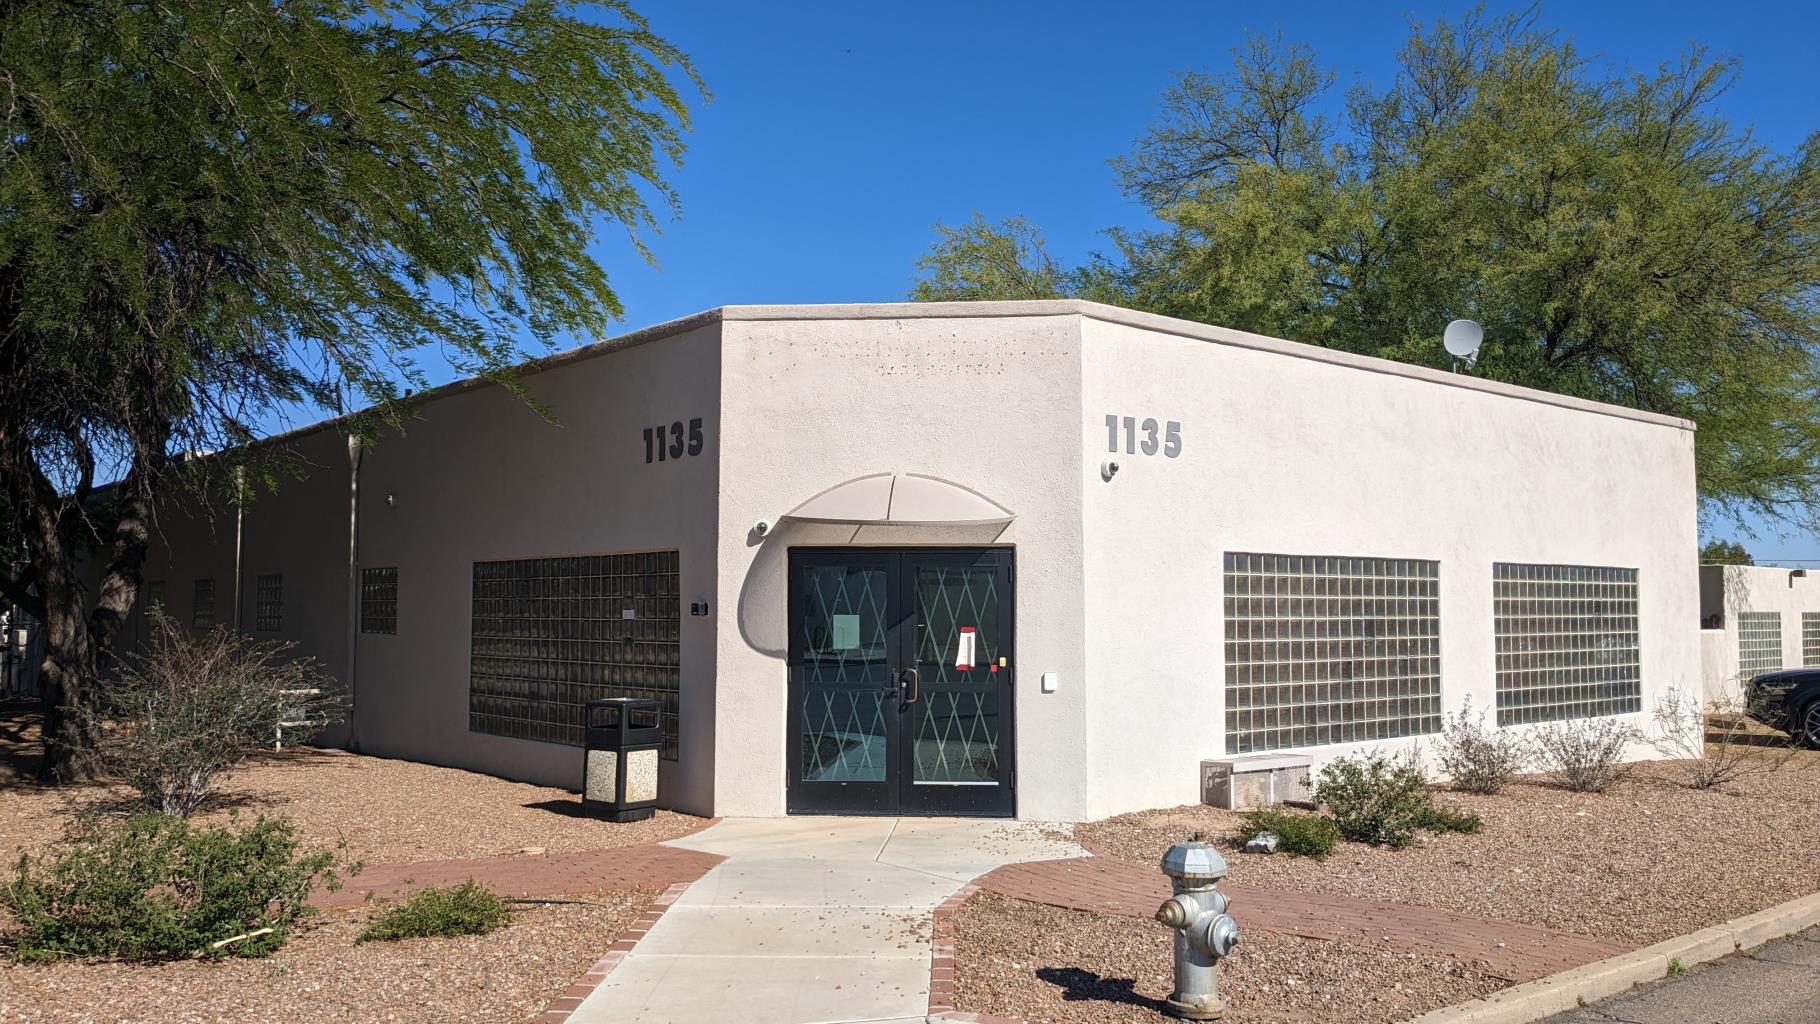 1135 N Jones Blvd., Tucson, AZ 85716  Tucson, A